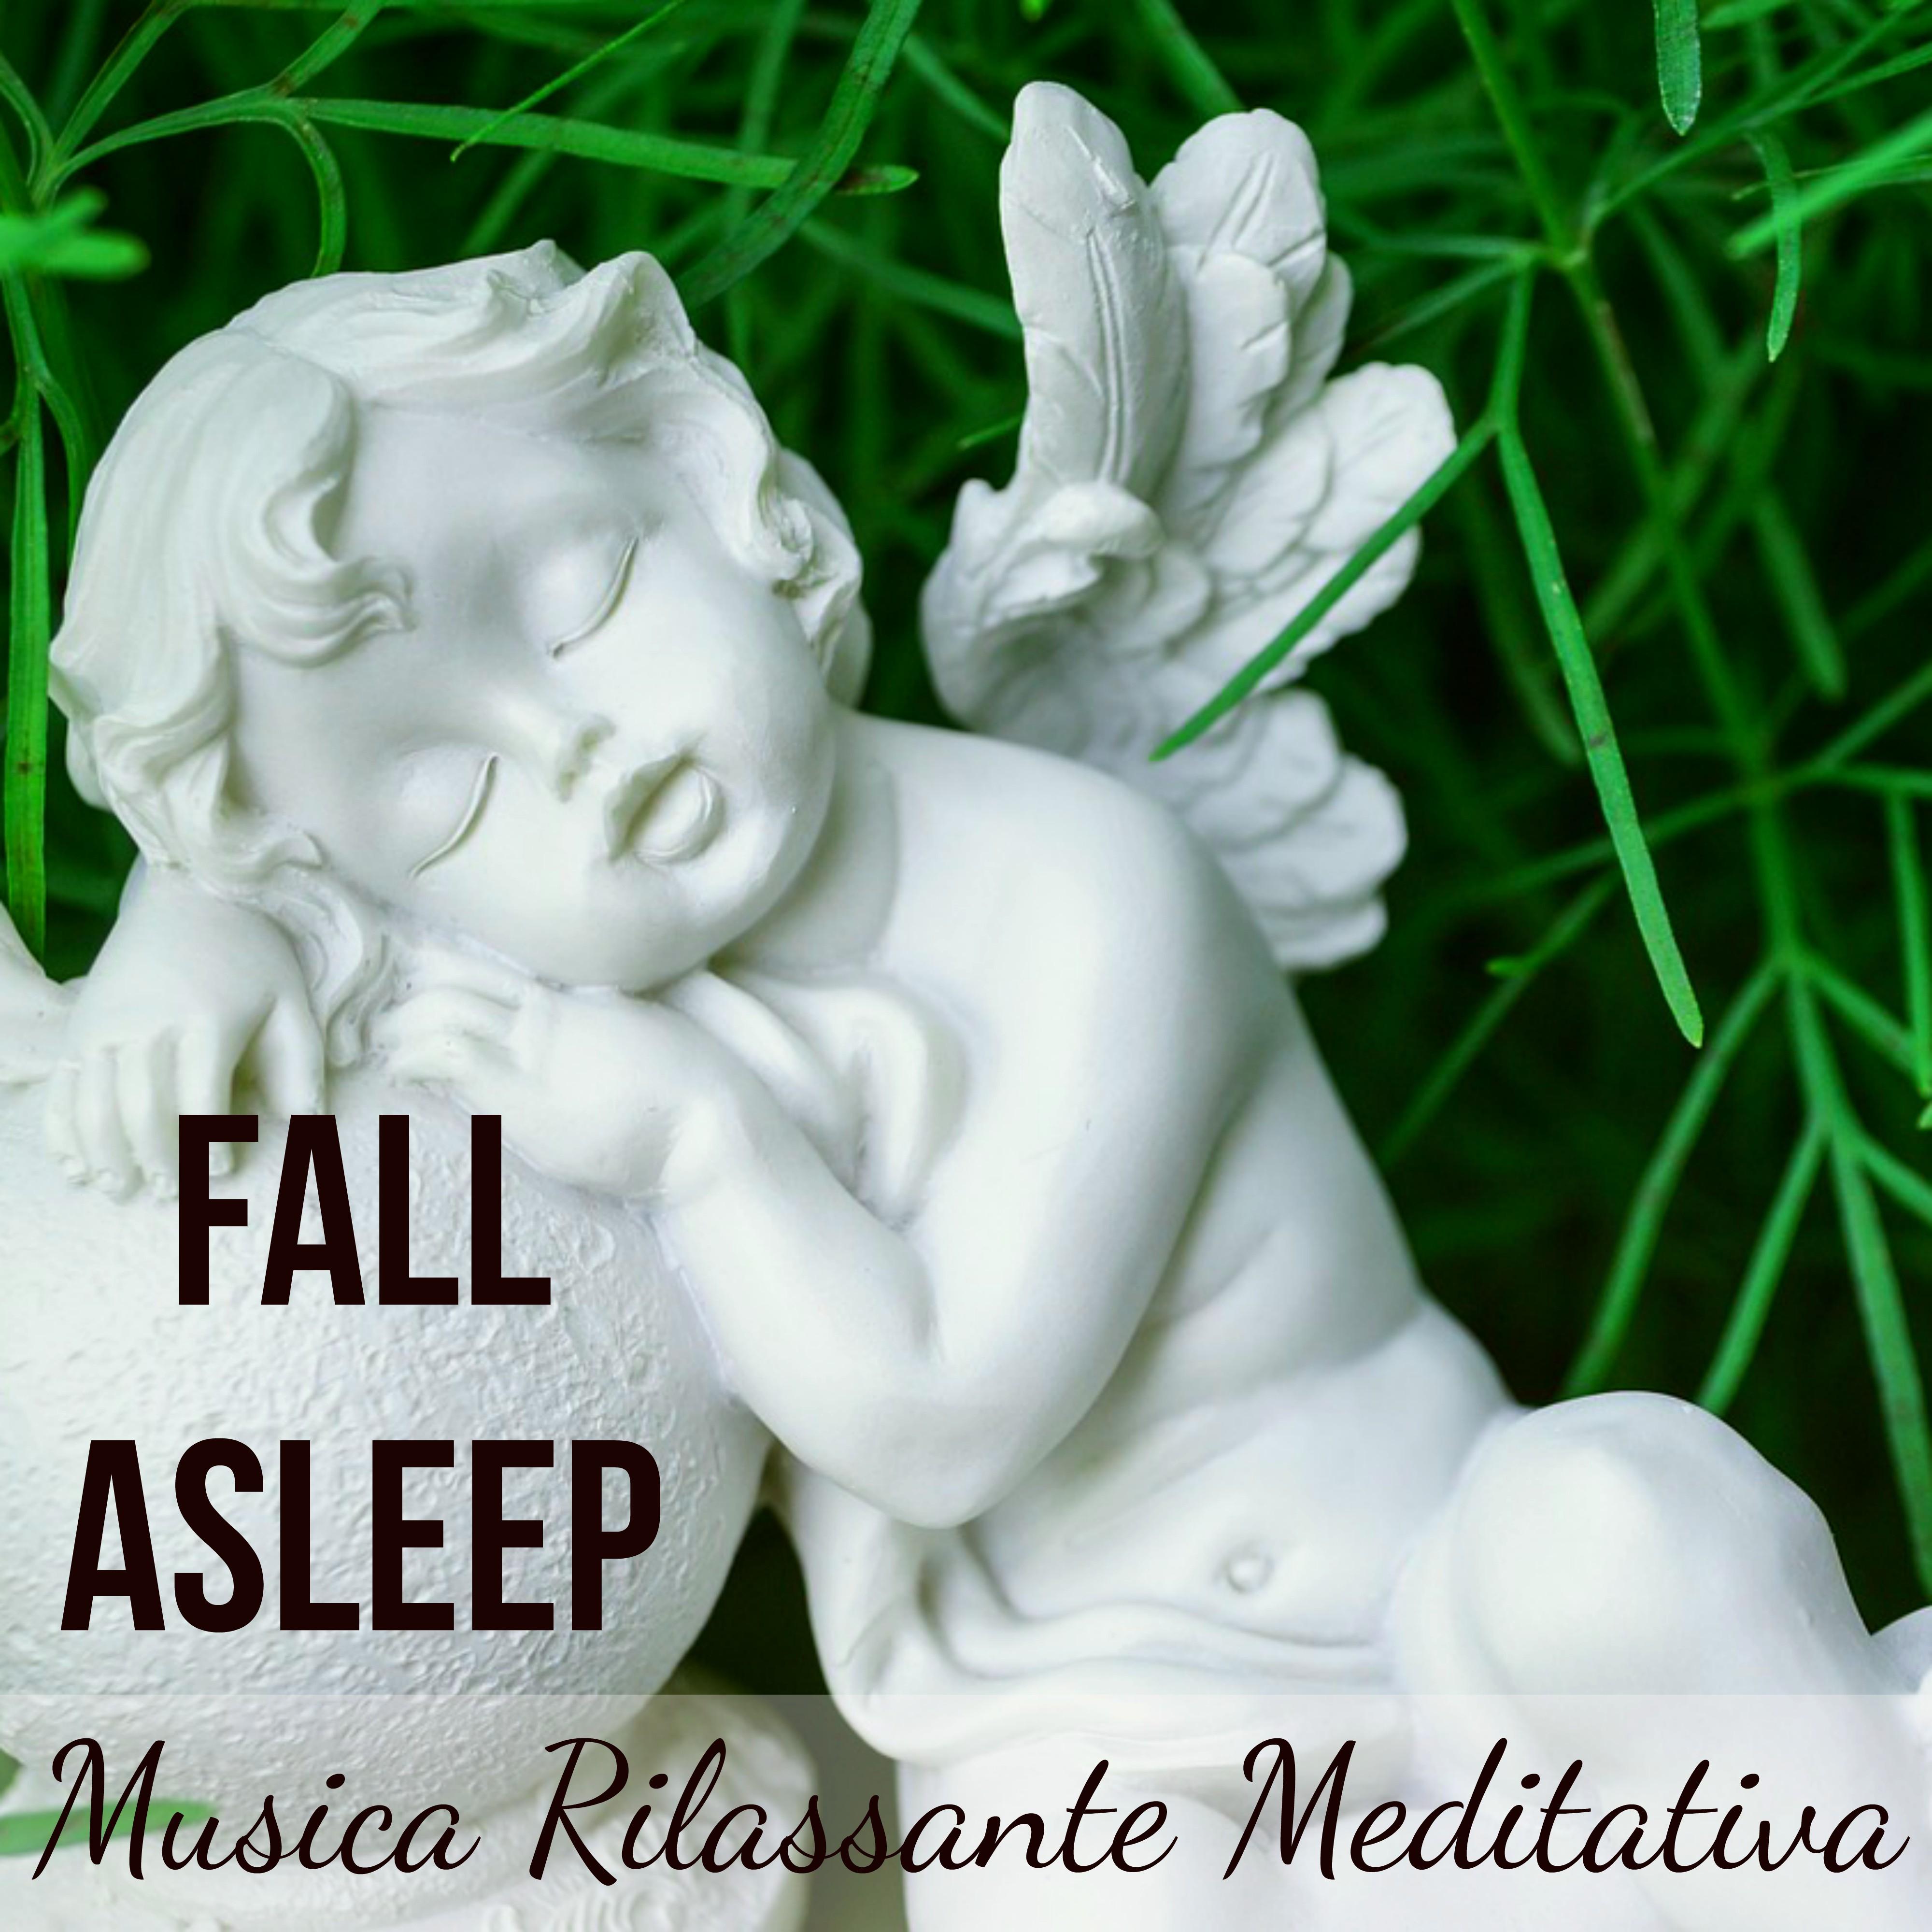 Fall Asleep - Musica della Natura Rilassante Meditativa per Ciclo del Sonno Mente Sana Esercizi Meditazione Star Bene con Suoni Strumentali Benessere New Age